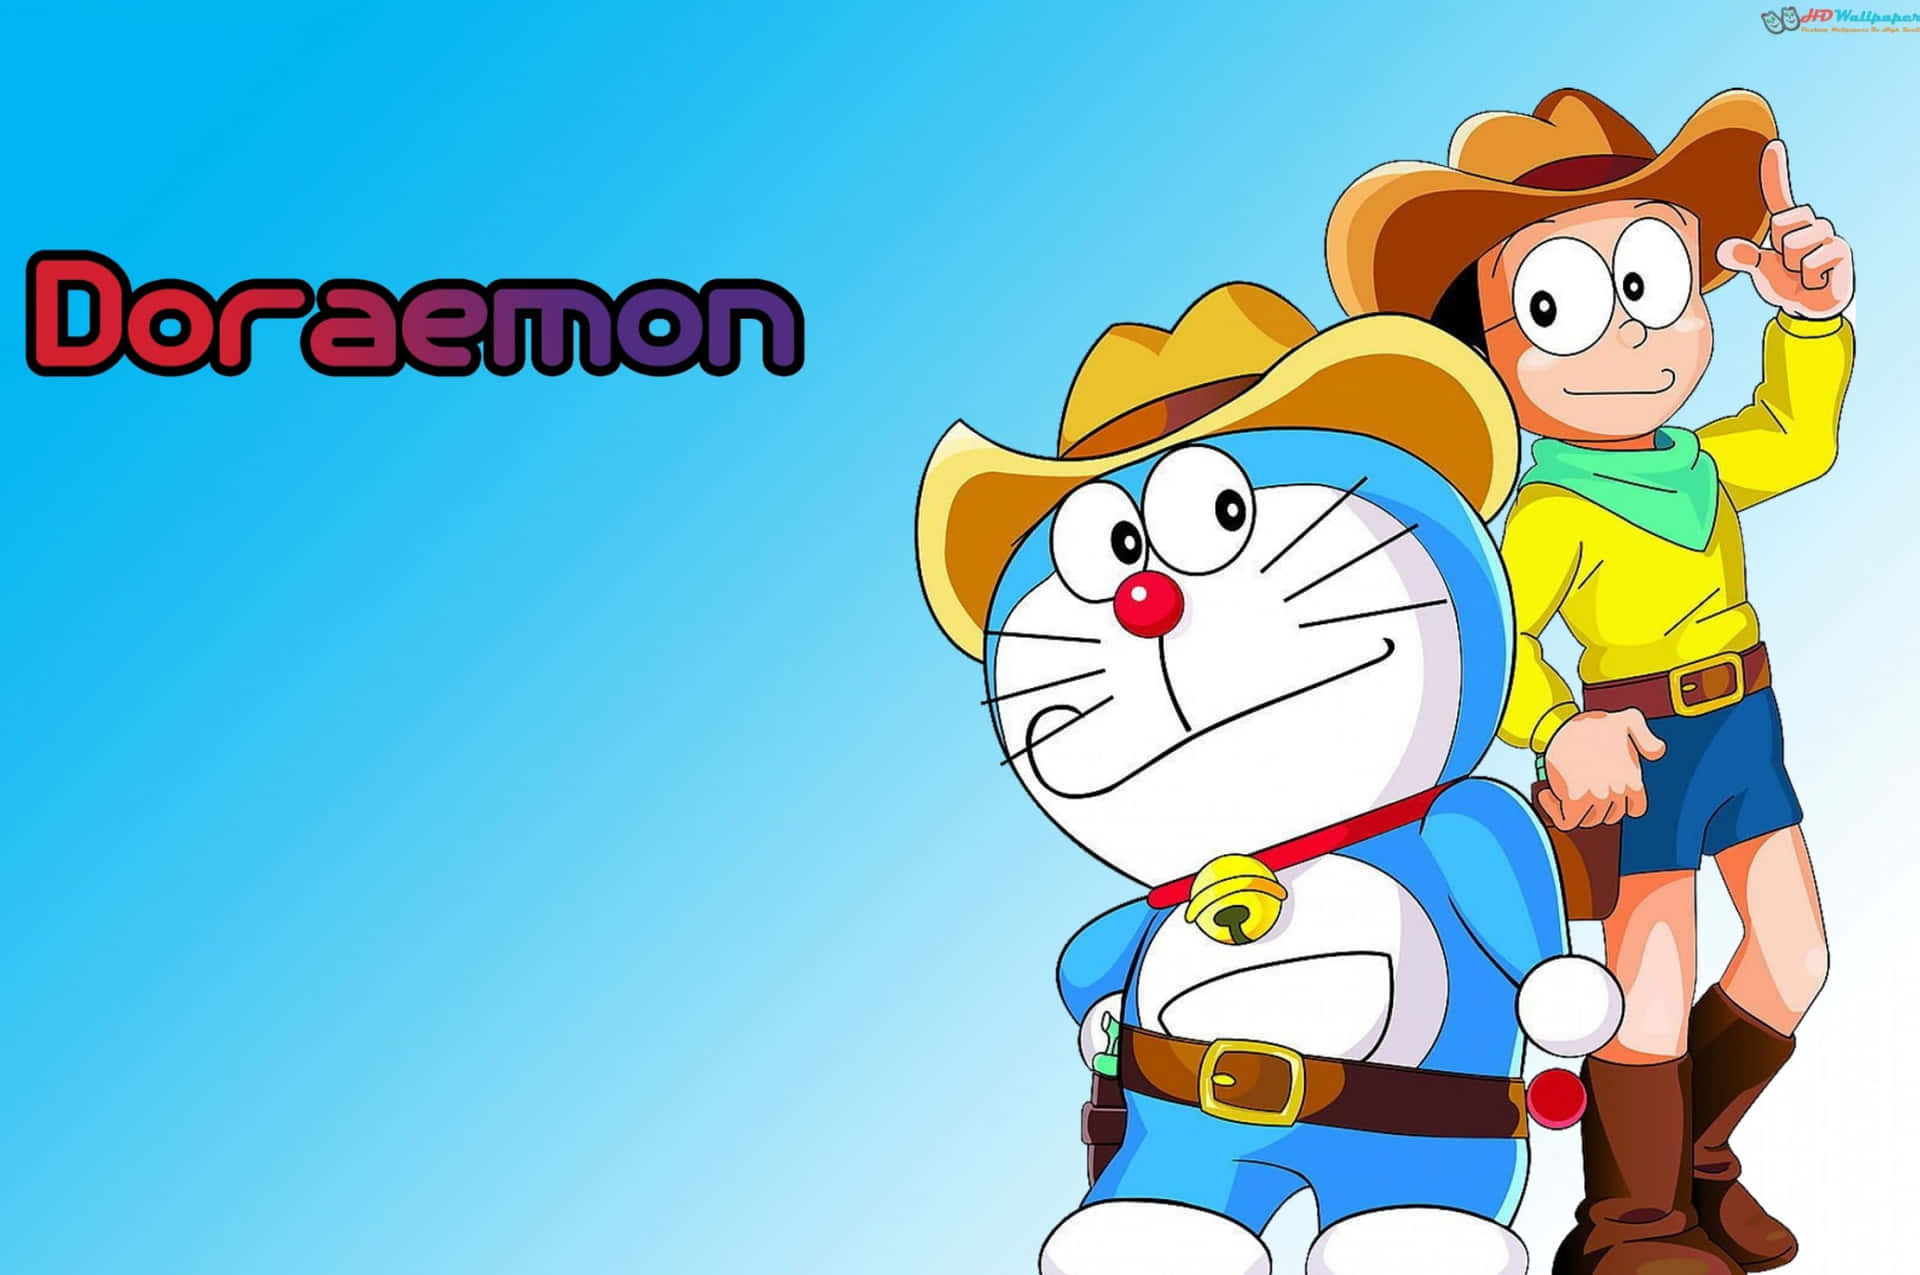 Doraemondesfrutando De Comida Com Seus Amigos.